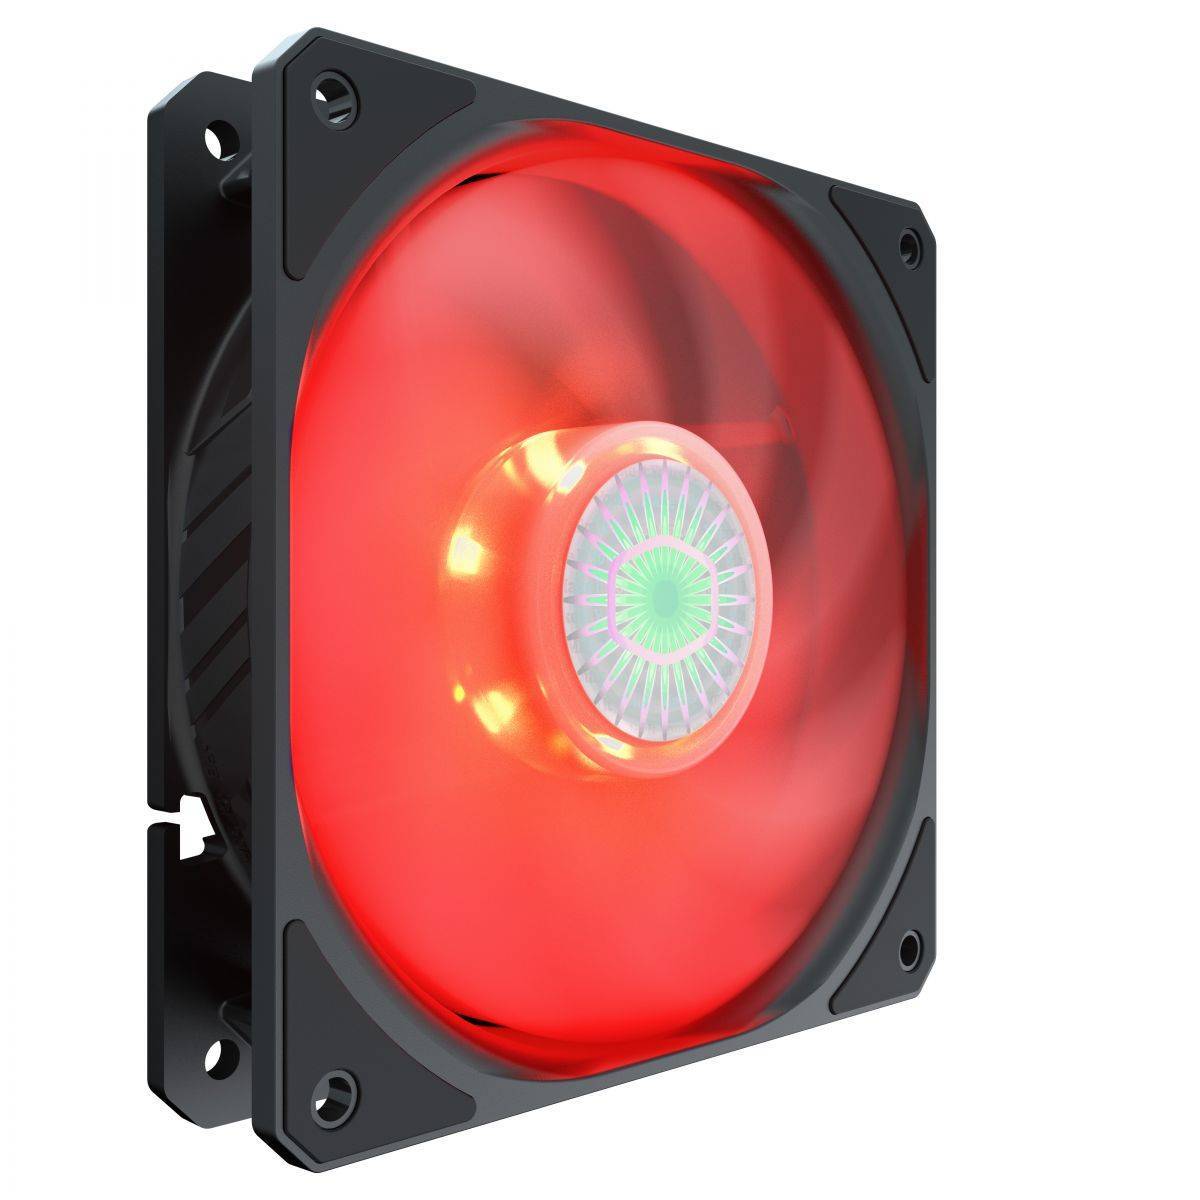 Cooler Master Case Cooler SickleFlow 120 Red LED fan, 4pin